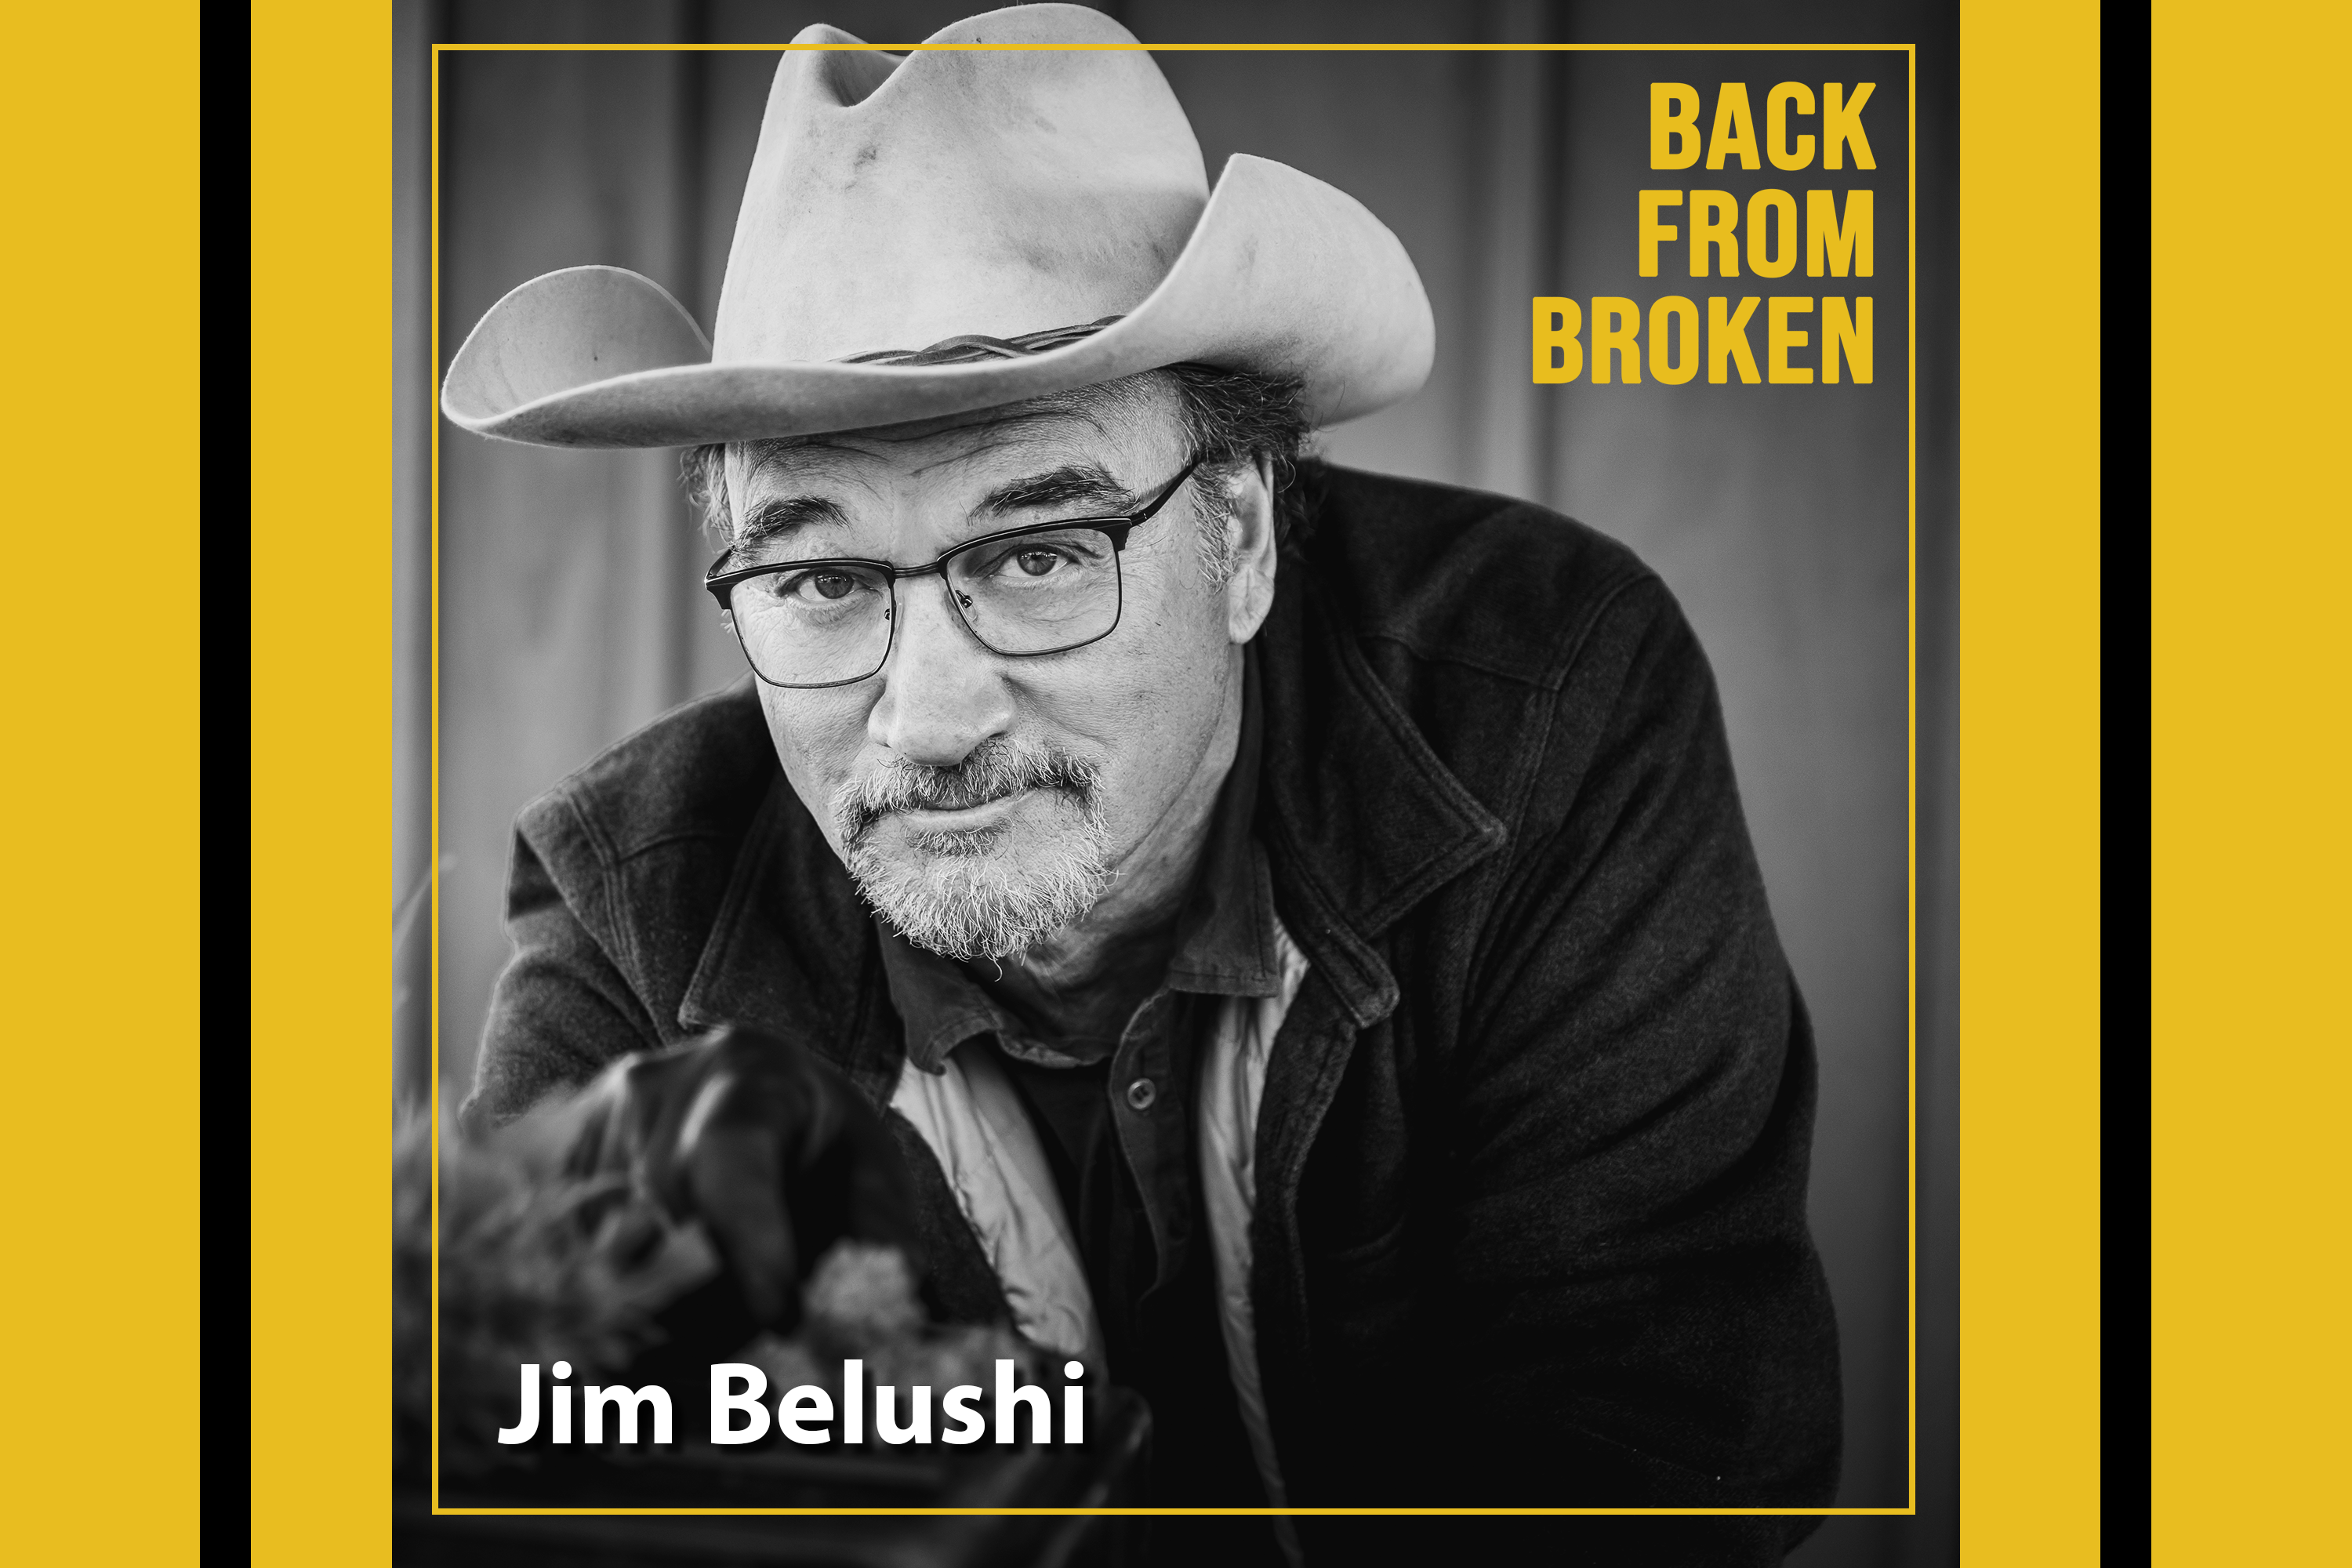 Jim Belushi on Back from Broken